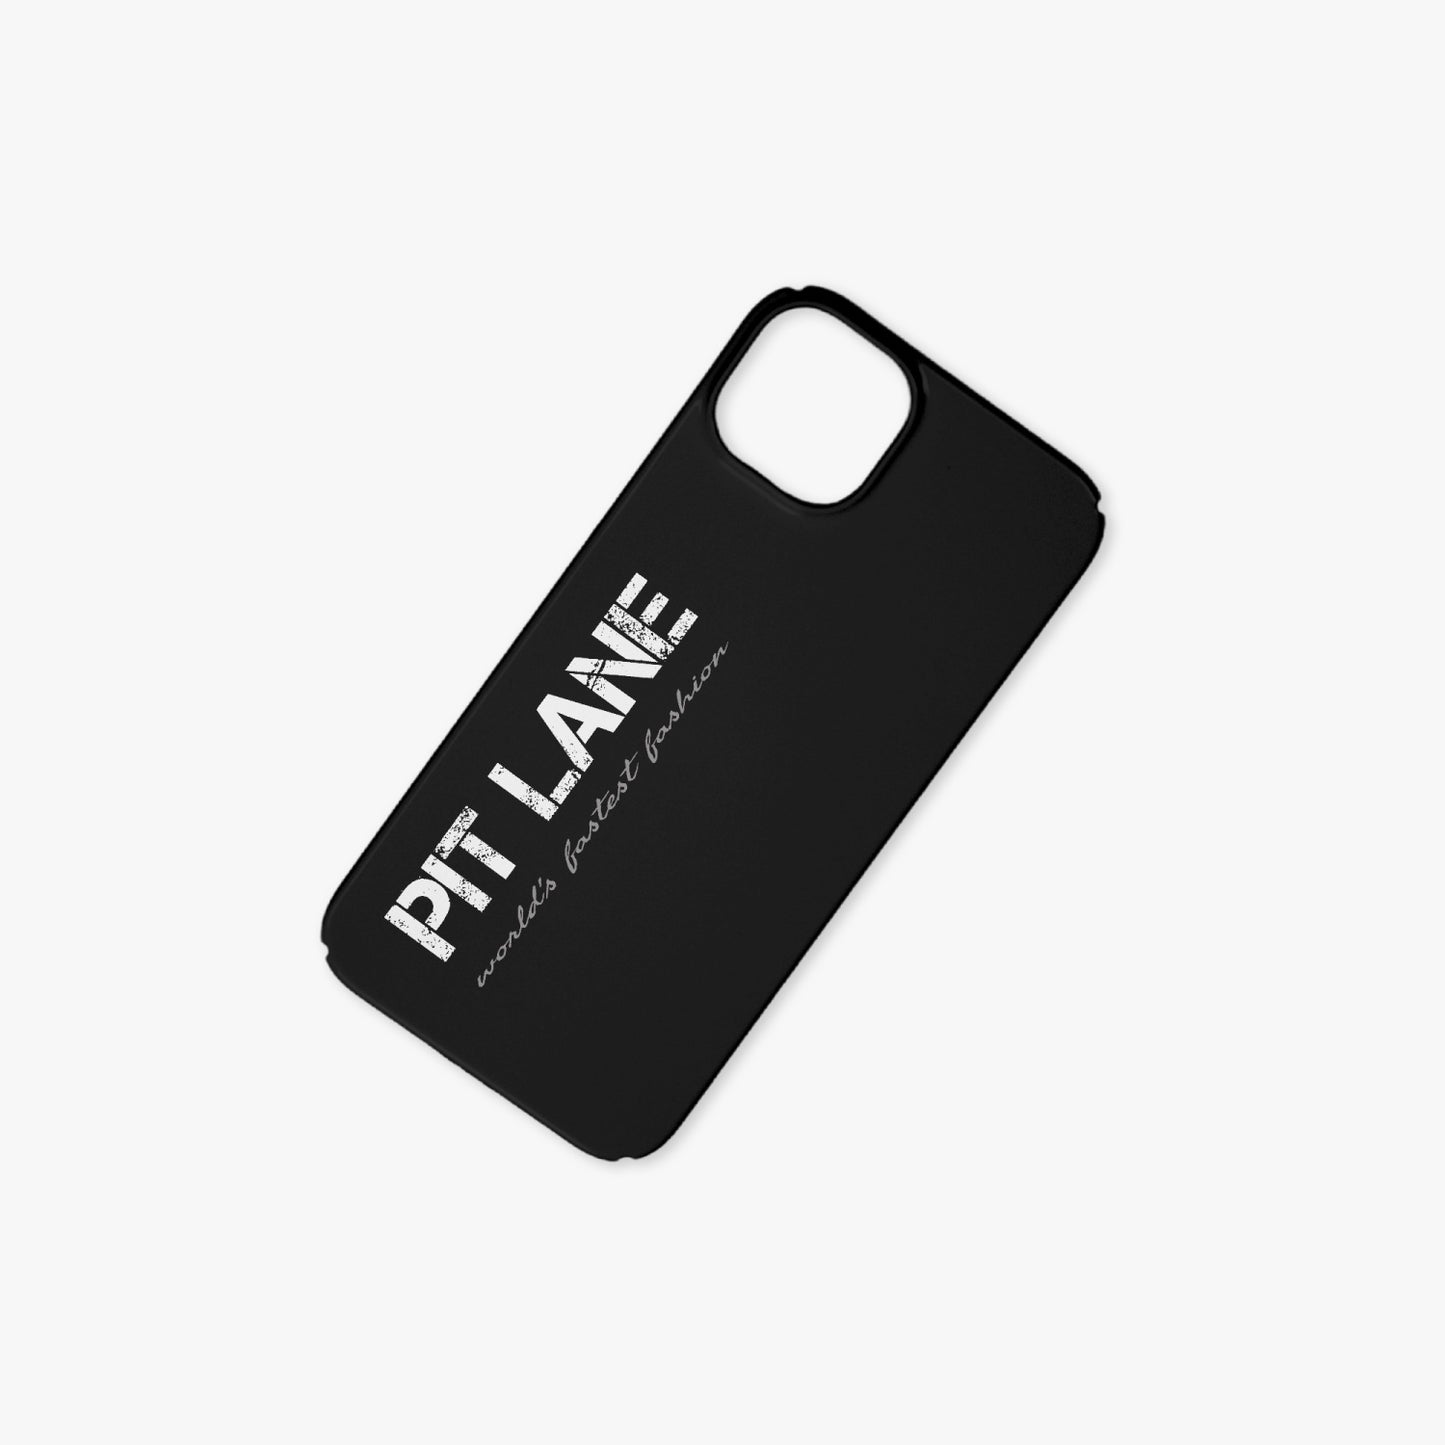 PIT LANE CLOTHING iPhone Flip Back Protection Case